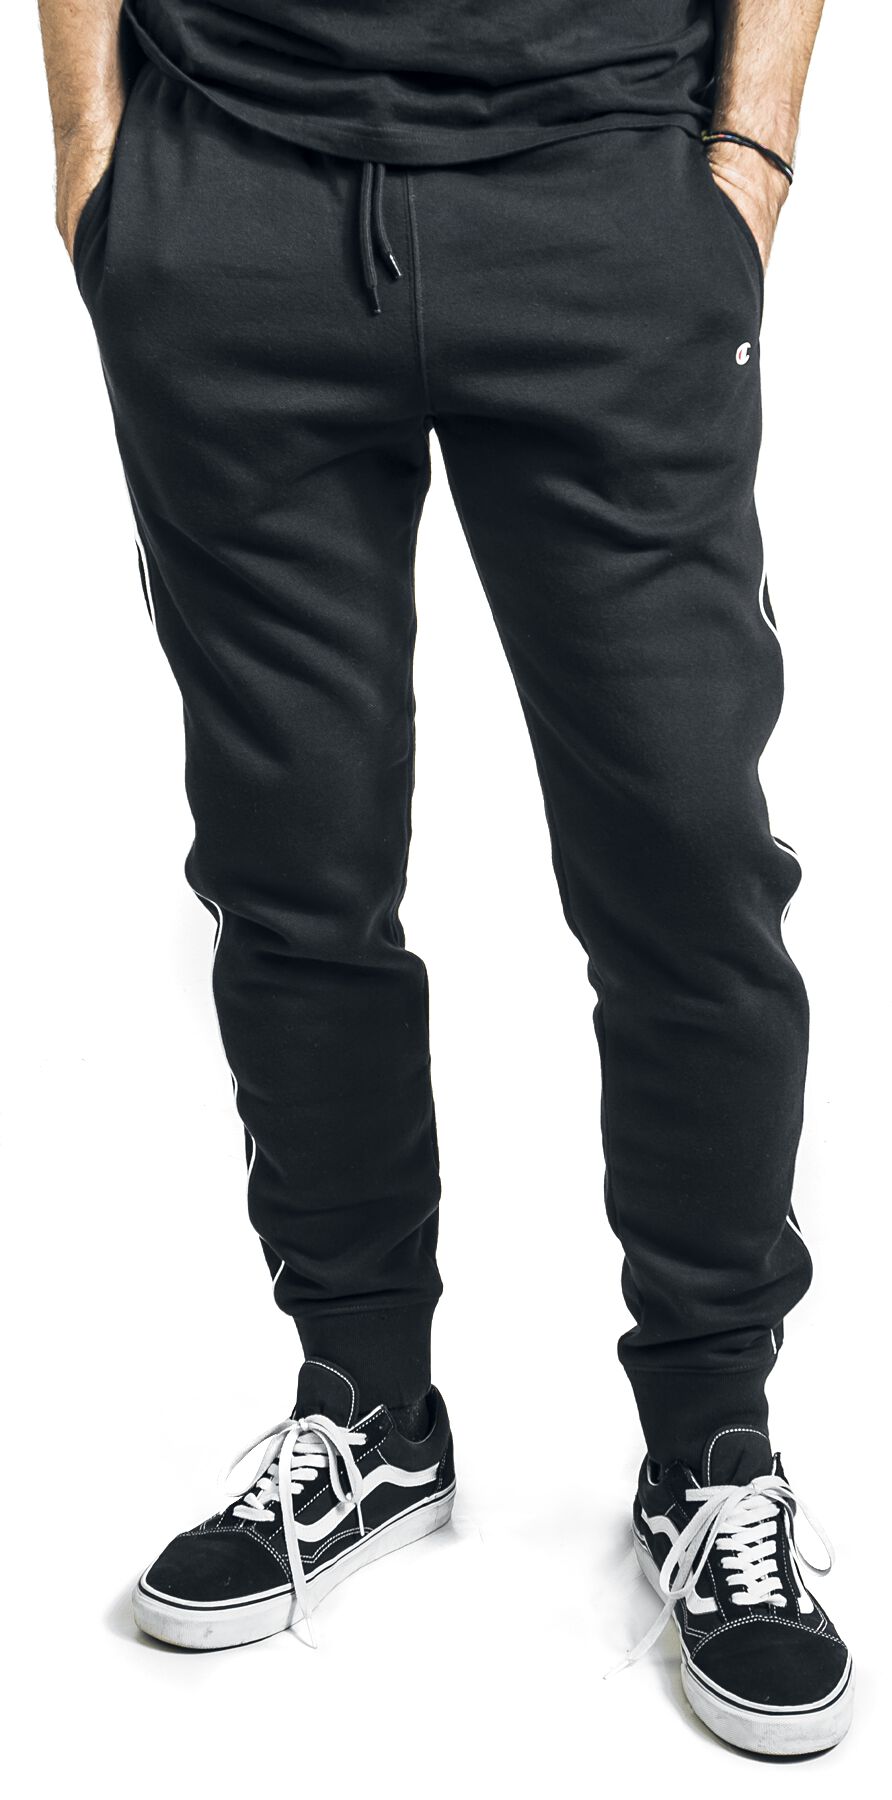 Pantalon en toile de Champion - Piping Block - S à XL - pour Homme - noir/blanc